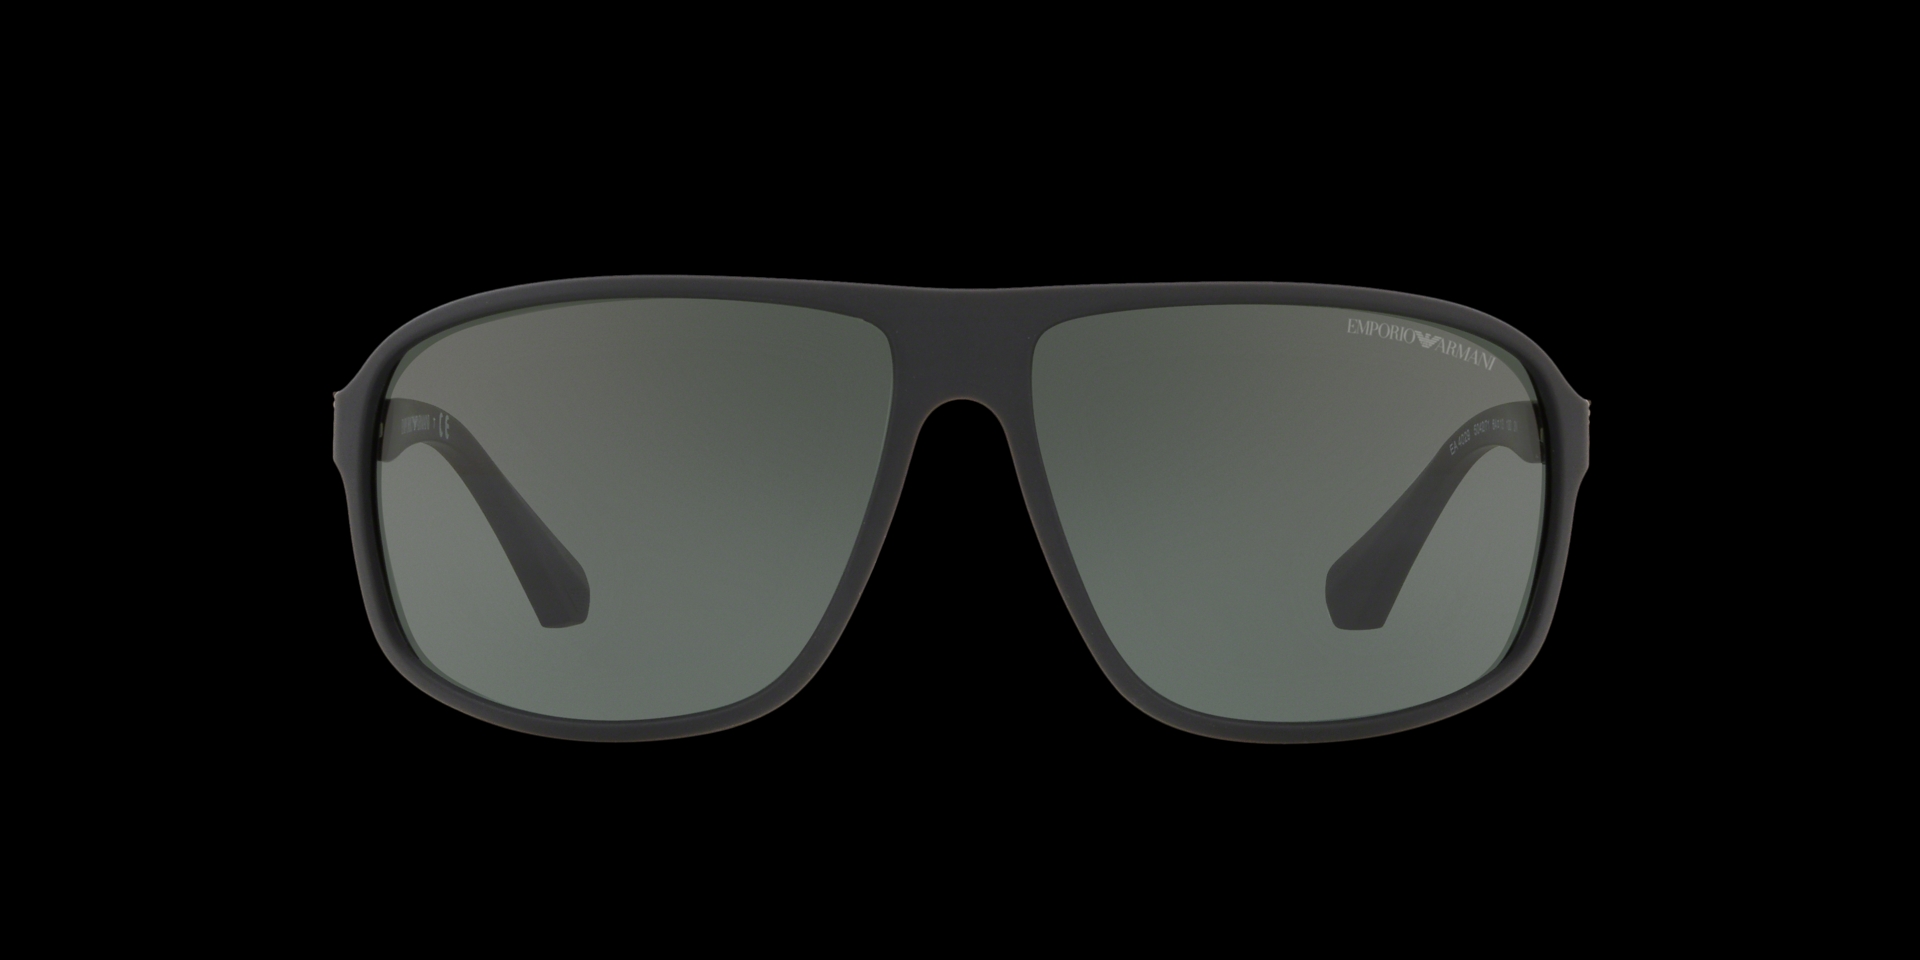 Emporio Armani sunglasses EA2140 300387-mncb.edu.vn